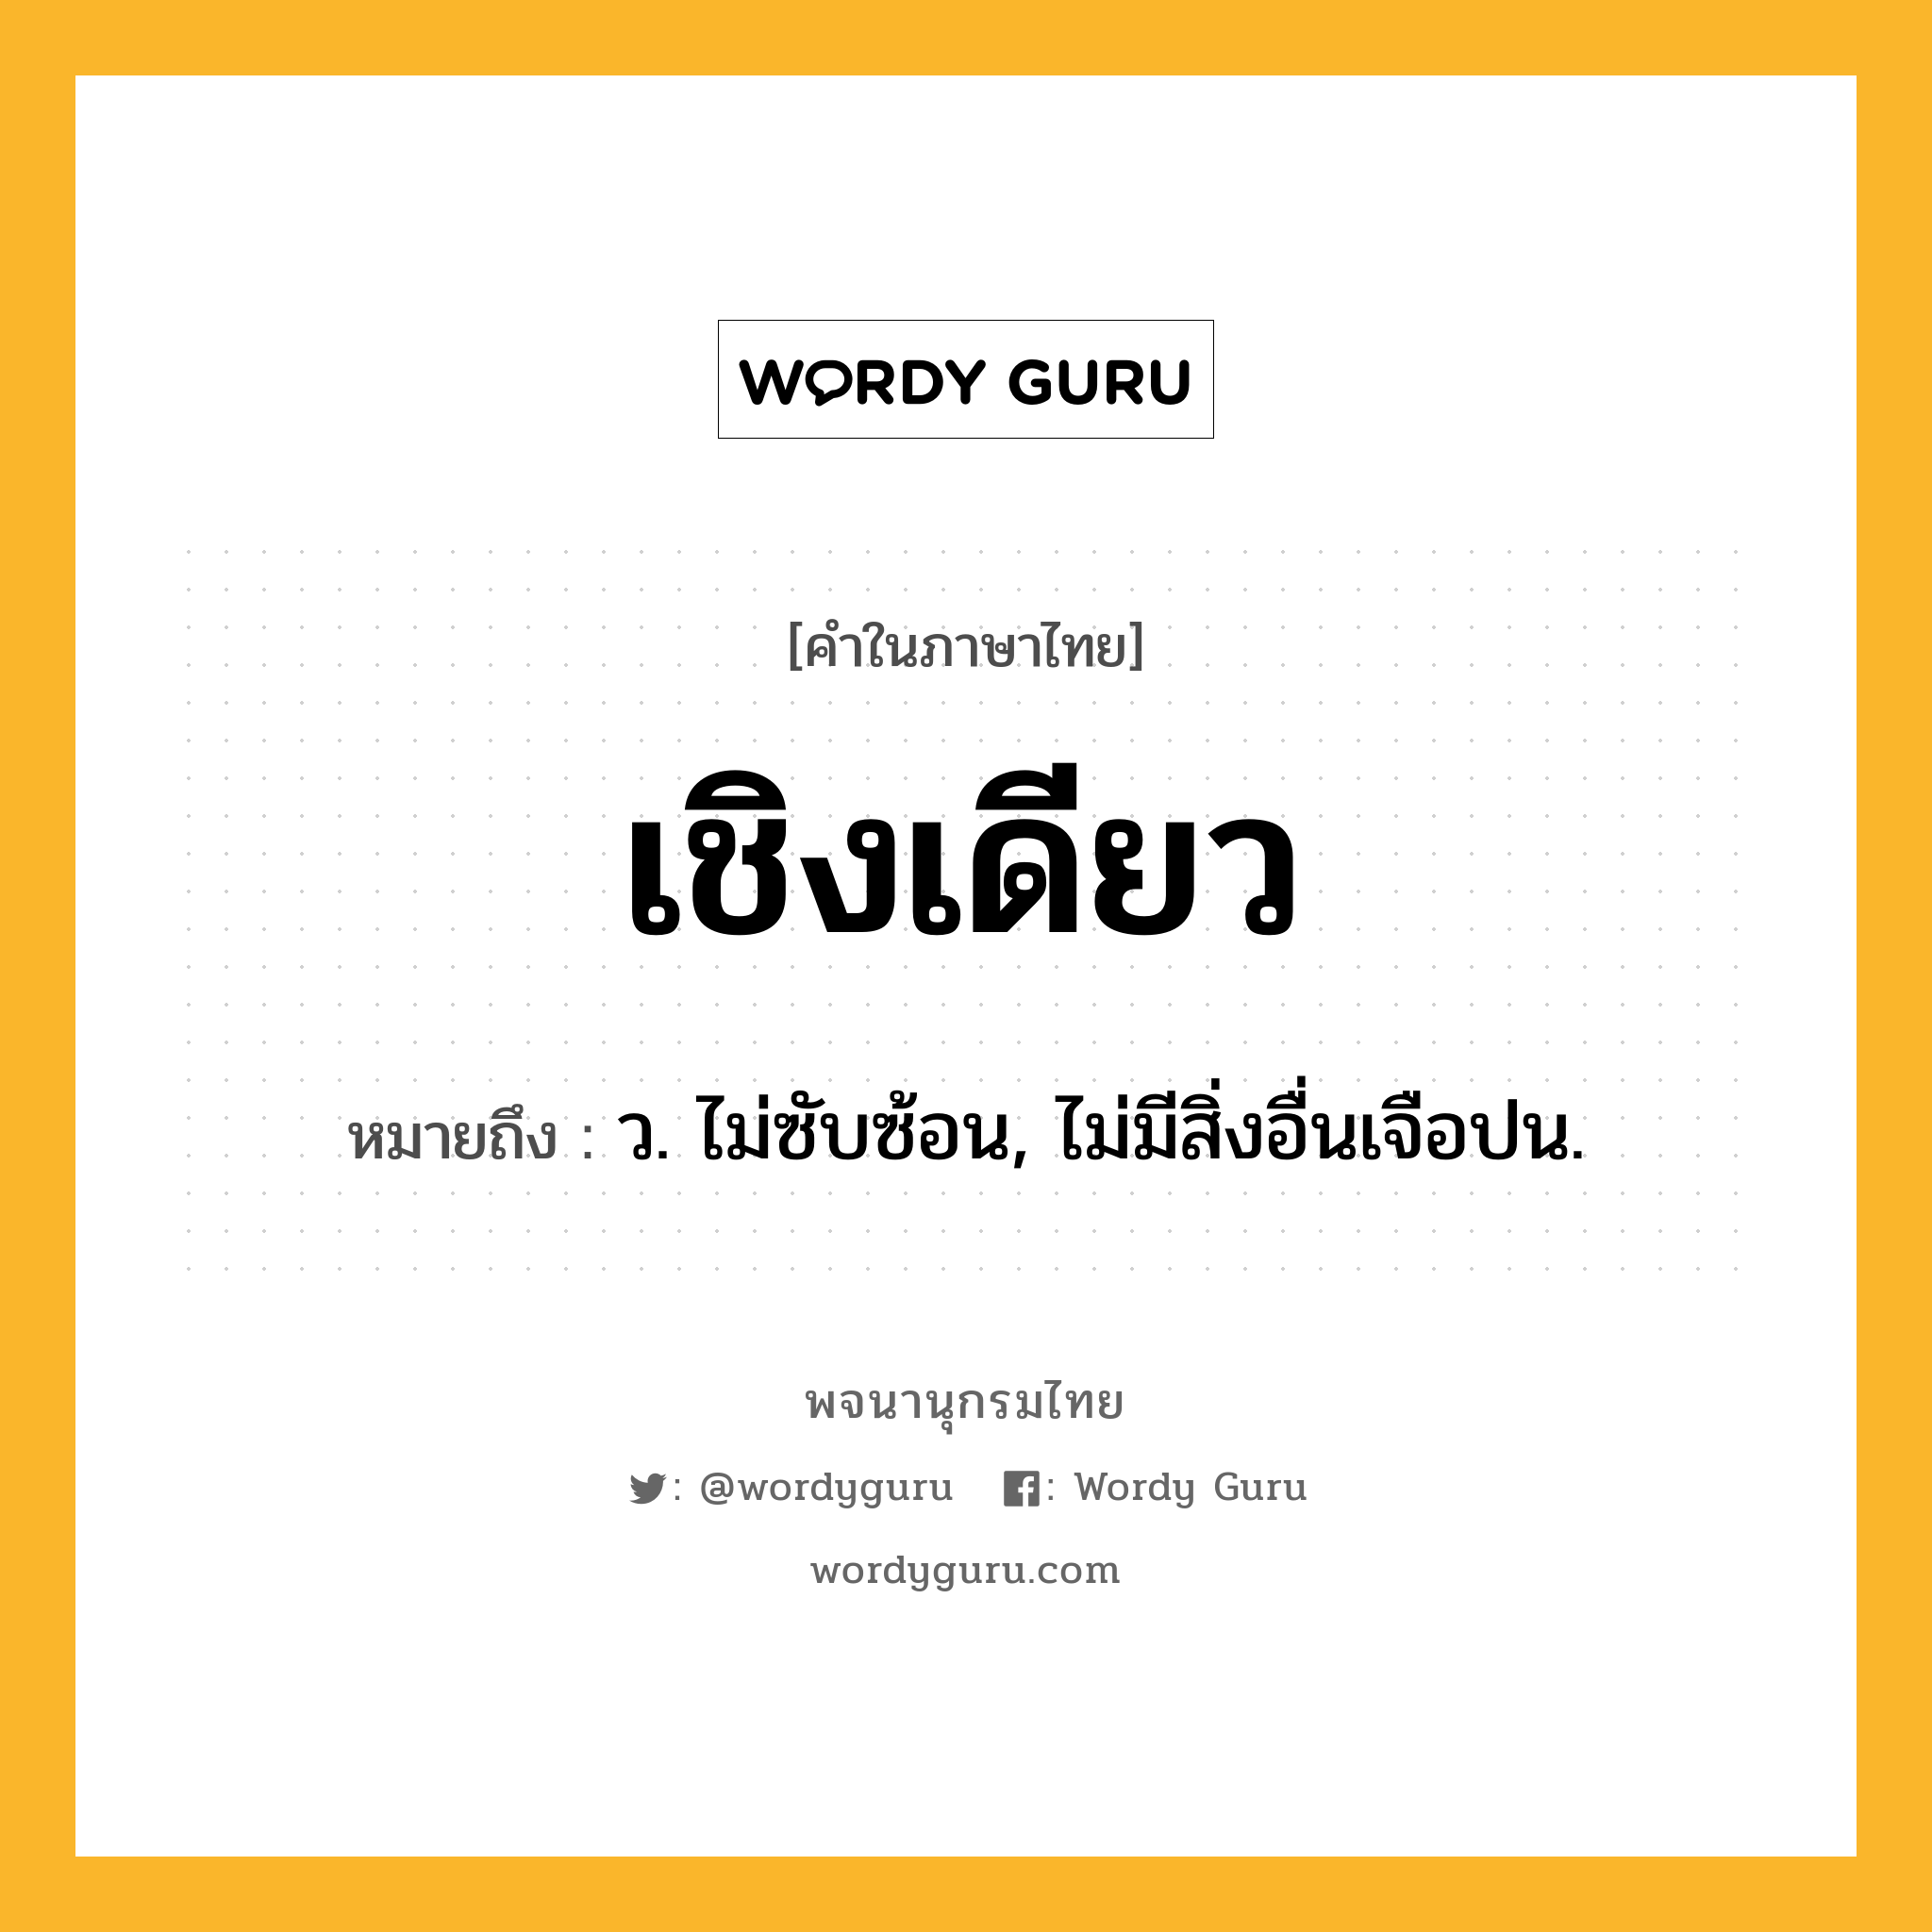 เชิงเดียว ความหมาย หมายถึงอะไร?, คำในภาษาไทย เชิงเดียว หมายถึง ว. ไม่ซับซ้อน, ไม่มีสิ่งอื่นเจือปน.